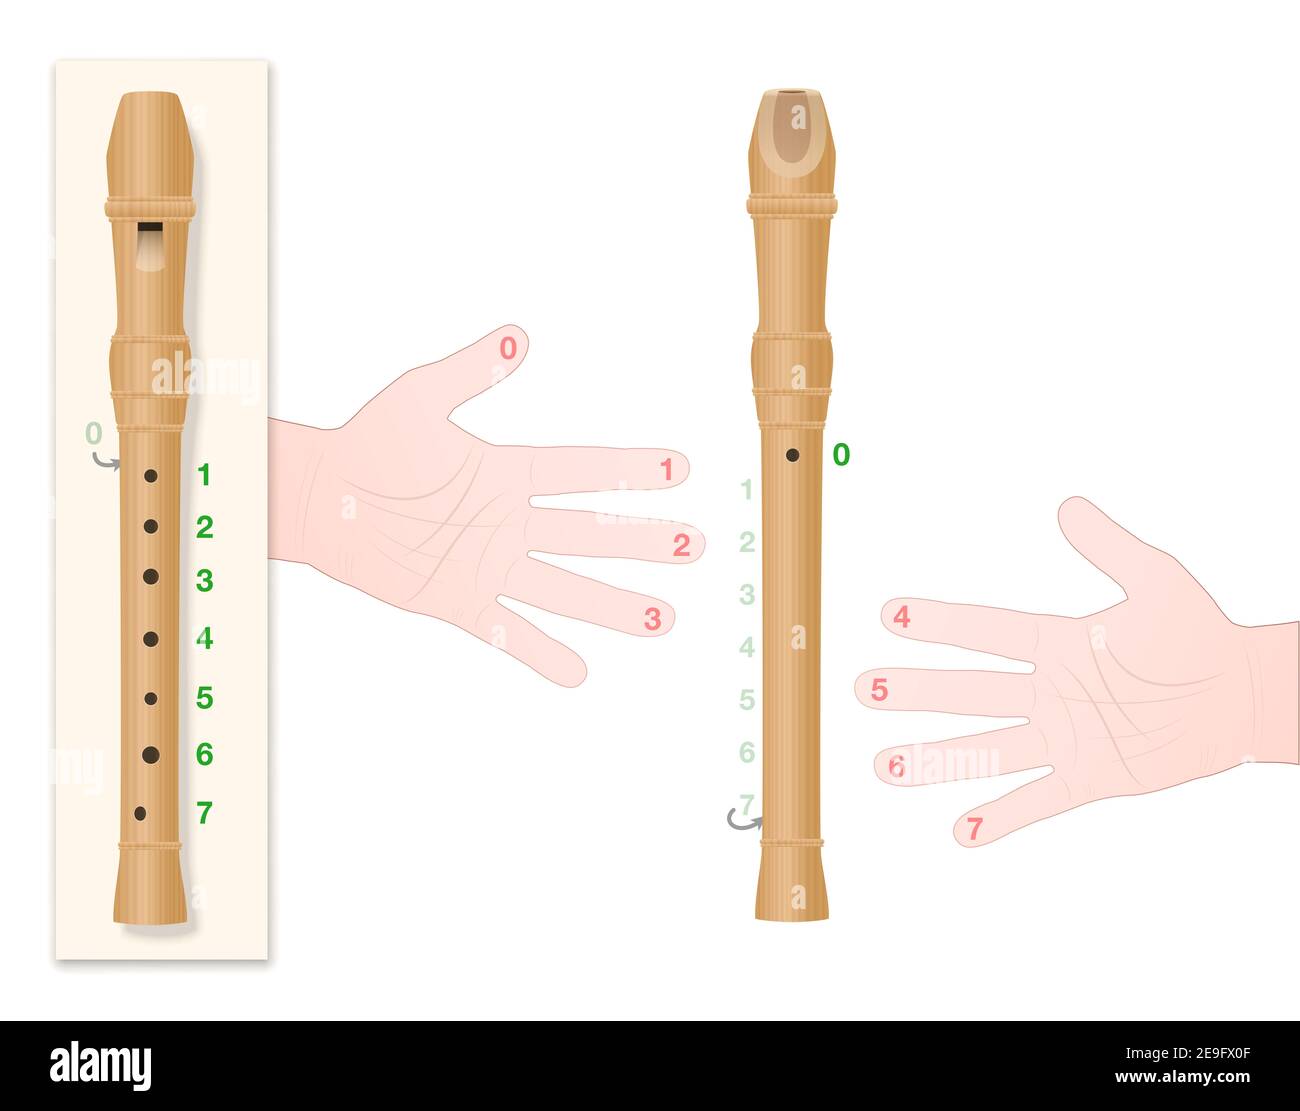 Blockflöte mit korrekter Handposition, nummerierten Fingern und entsprechenden Löchern des Instruments, um zu lernen, diese Musik richtig zu spielen. Stockfoto